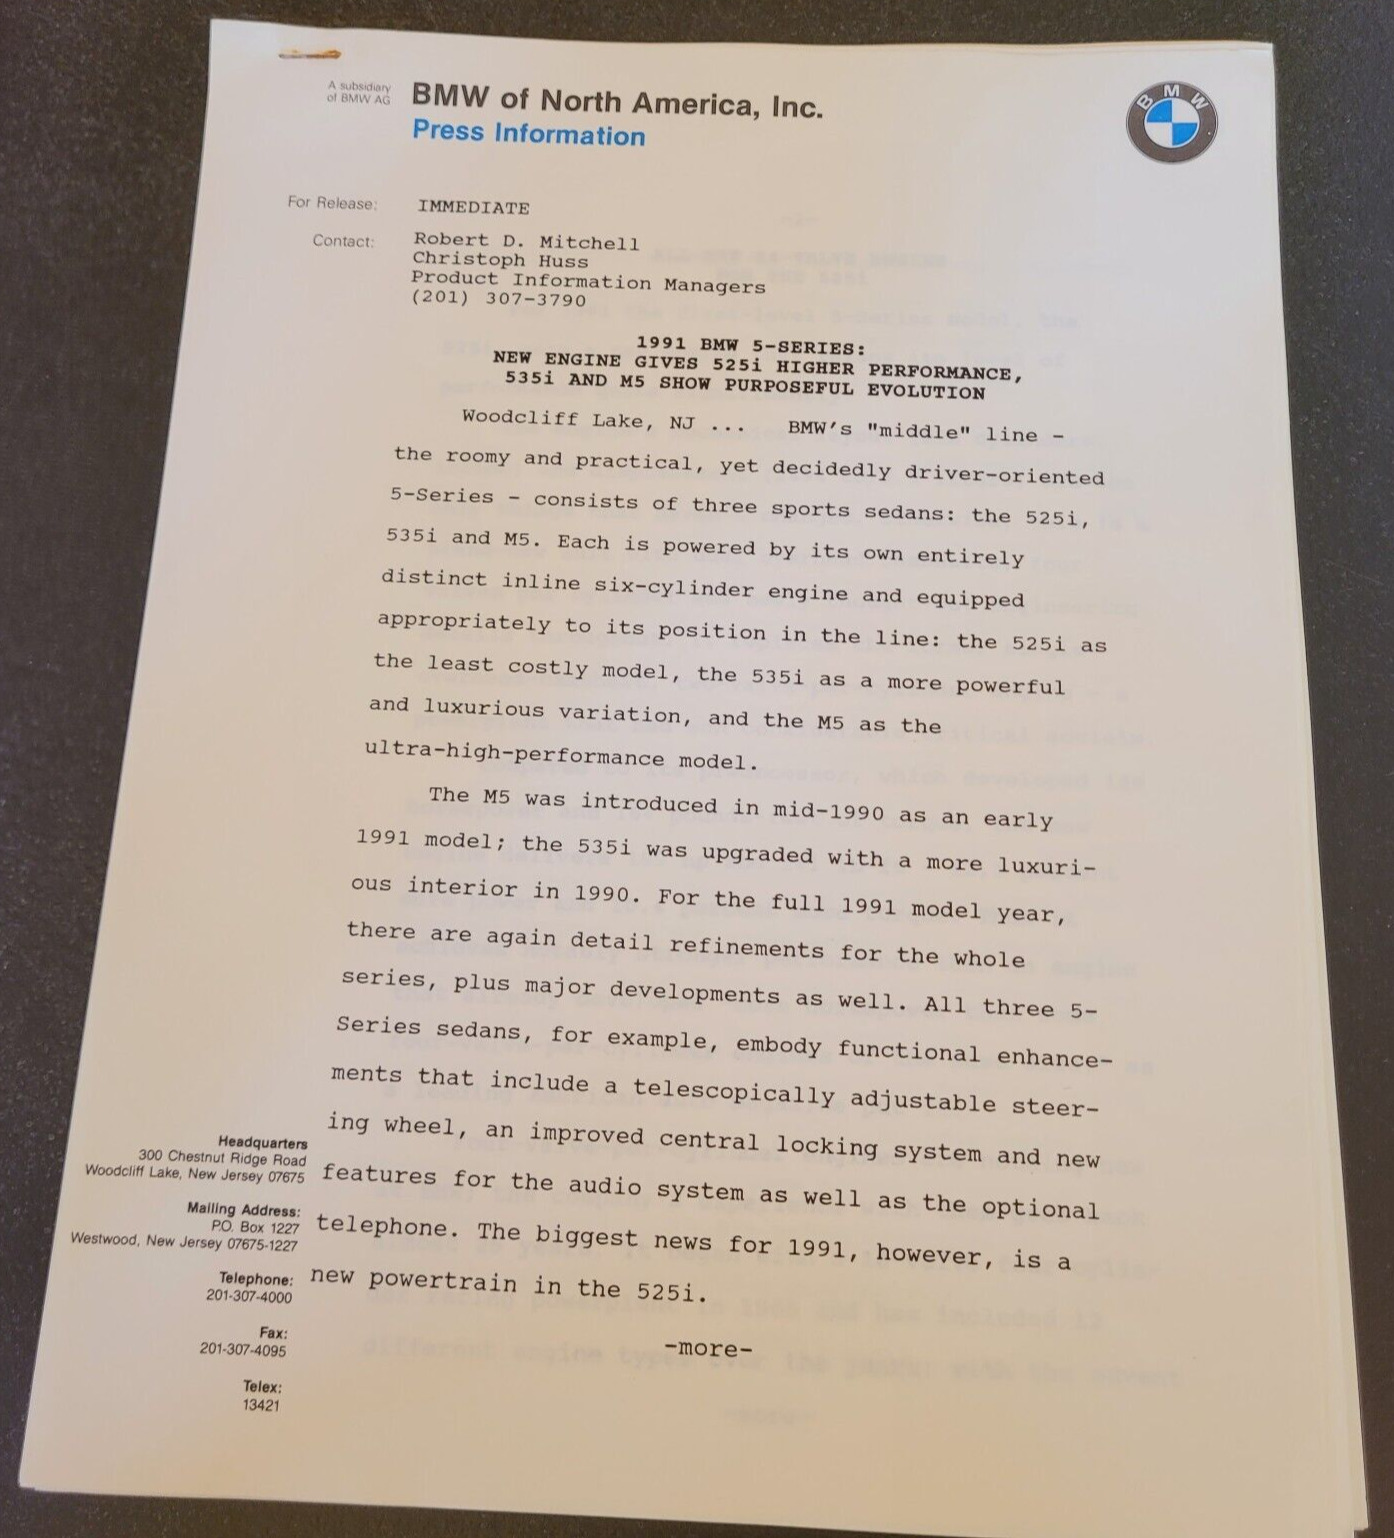 BMW 1991 5-Series Model Dealer Information Official Original Press Release